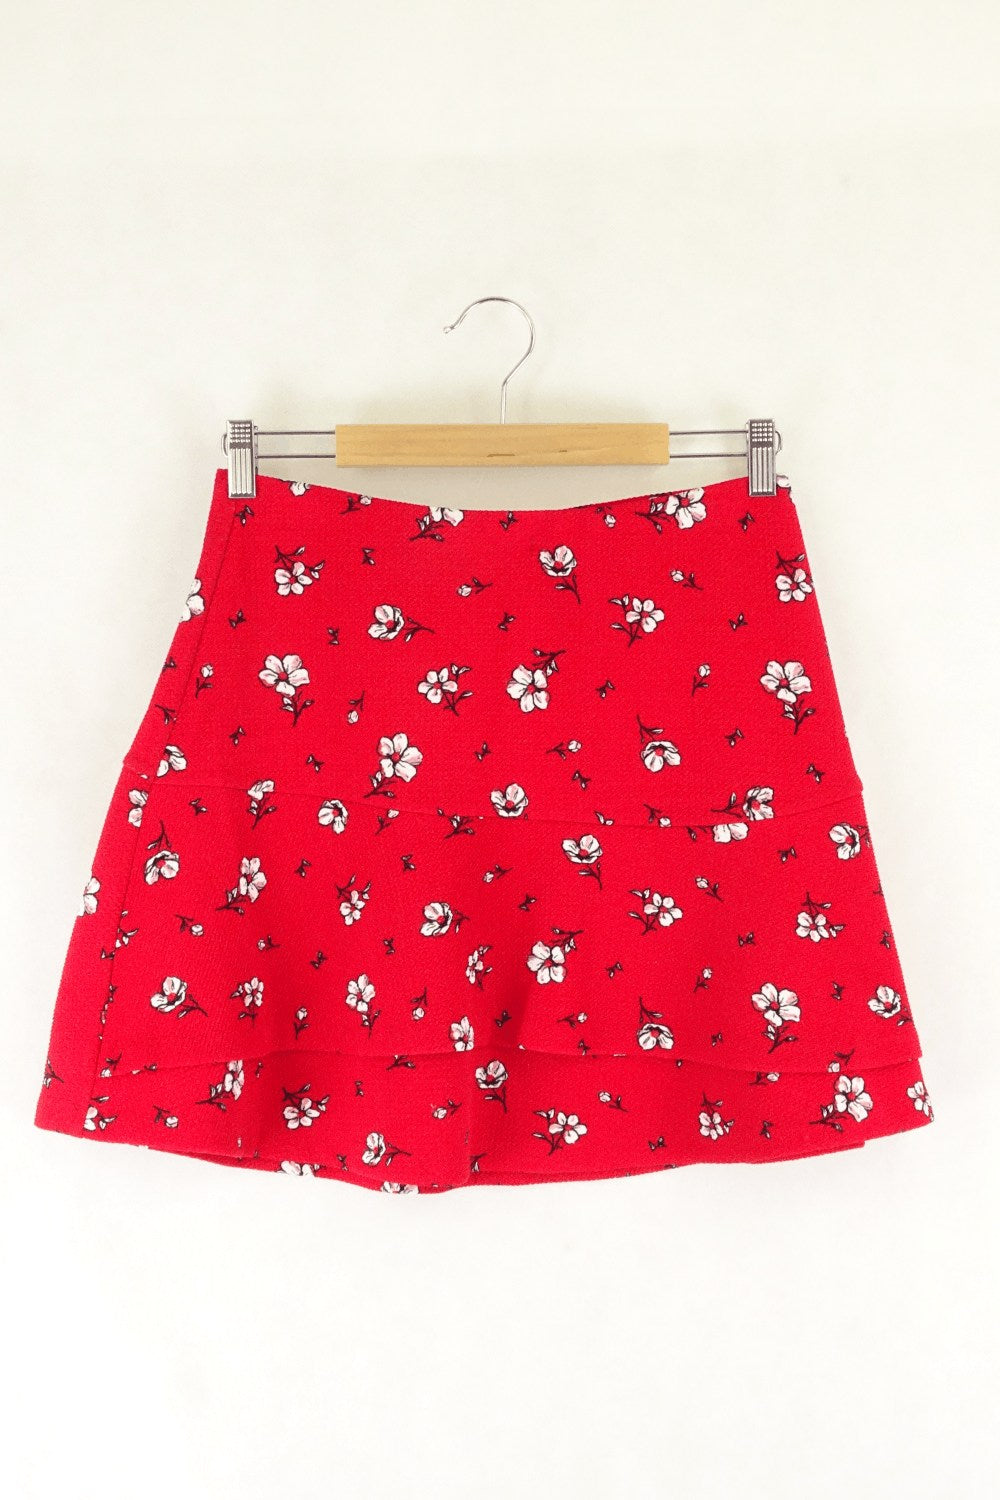 Sportsgirl Red Patterned Mini Skirt S